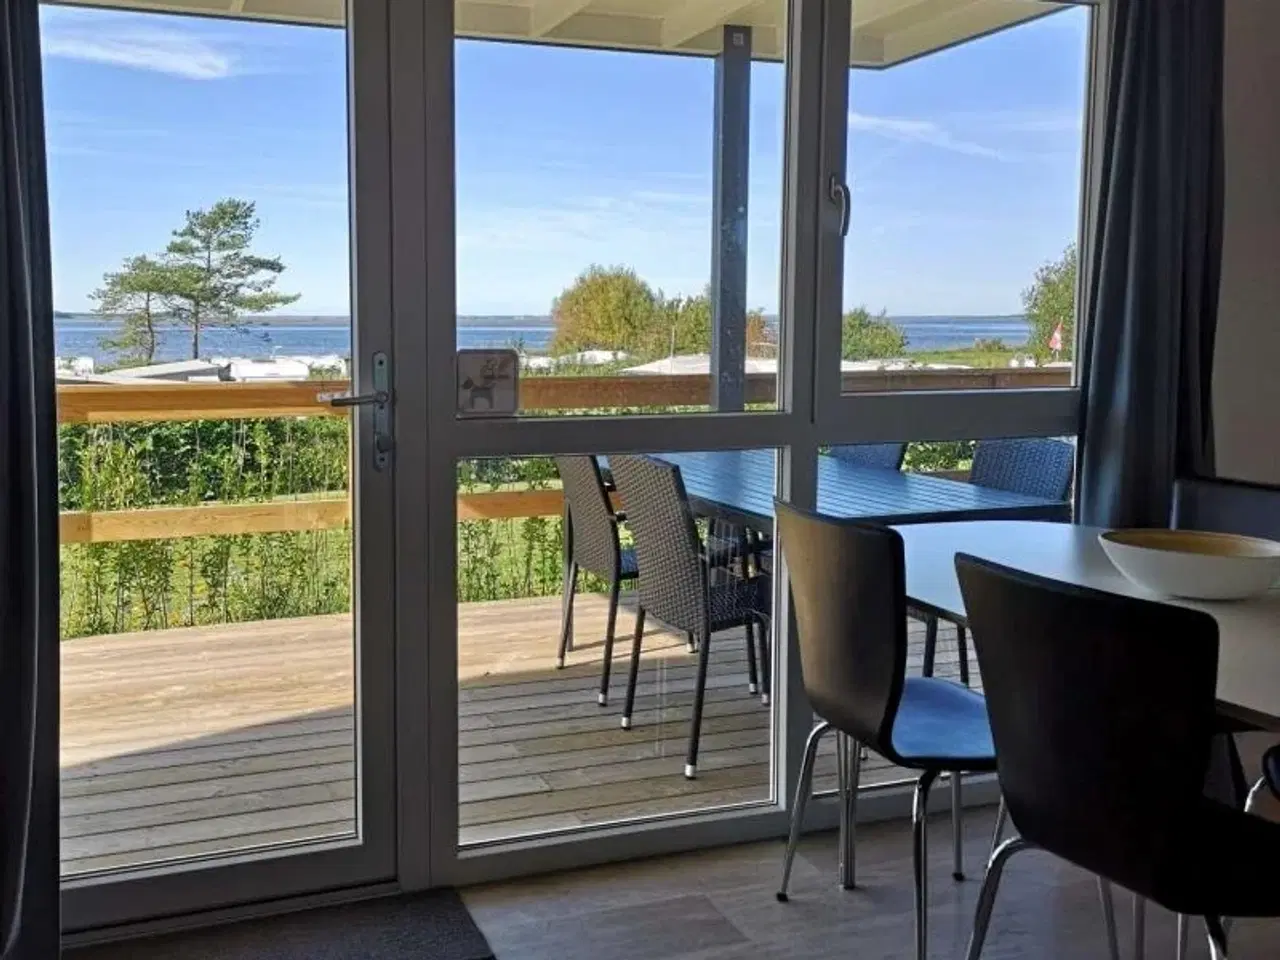 Billede 2 - Nye feriehuse ved Limfjorden nær Aalborg - Opvarmet minivandland, legeplads, cafe, gratis WIFi, åbent hele året, i hjertet af Nordjylland.